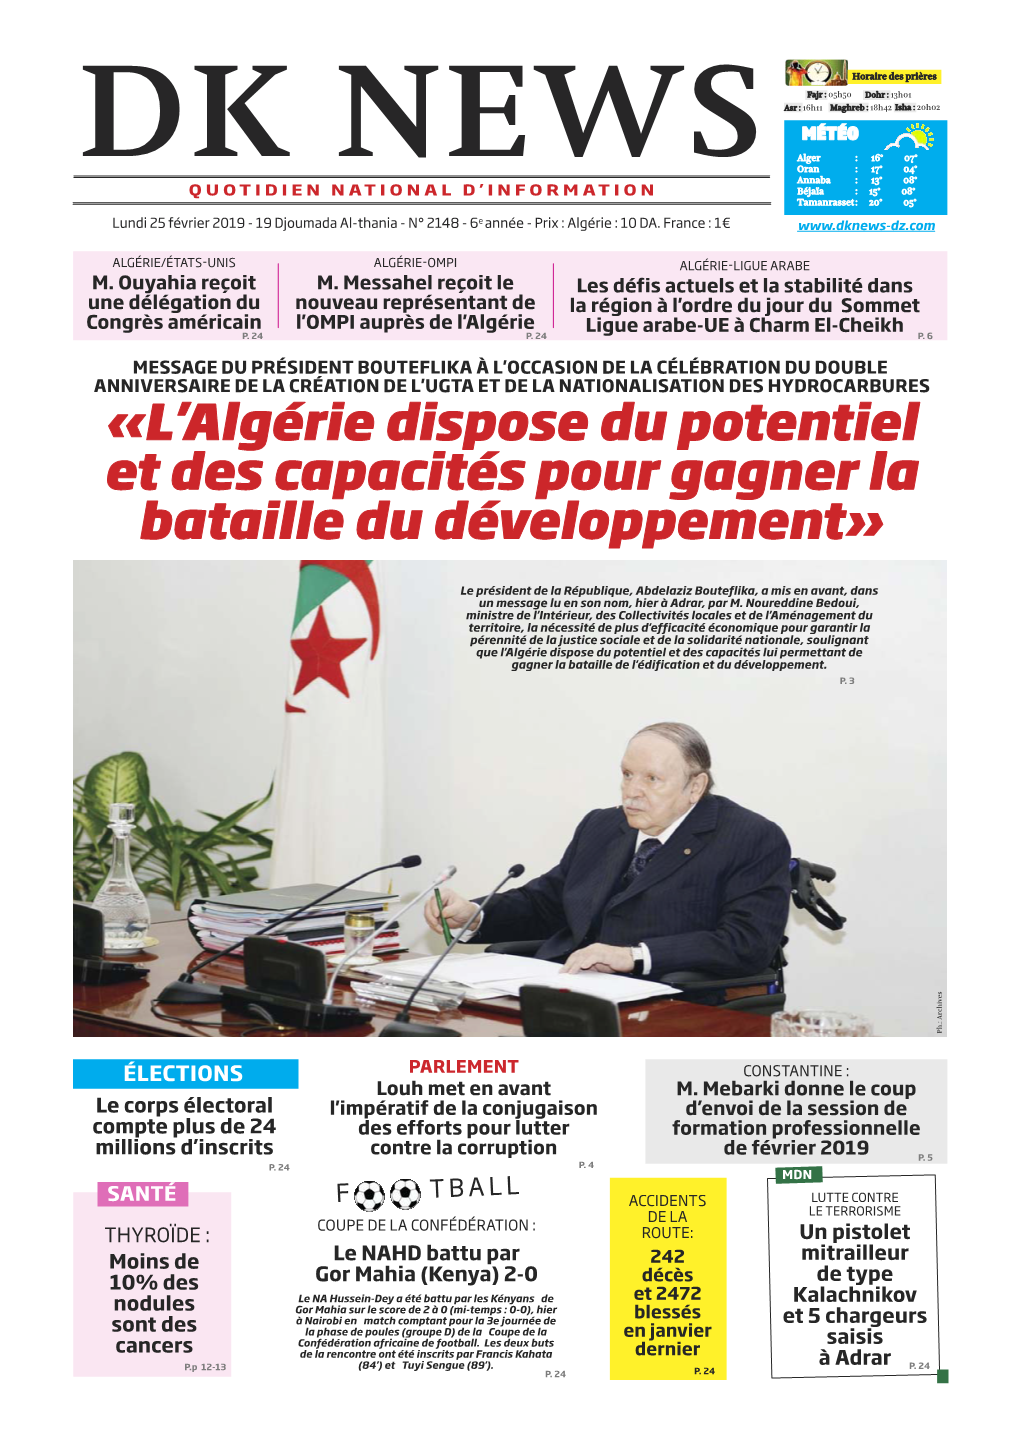 L'algérie Dispose Du Potentiel Et Des Capacités Pour Gagner La Bataille Du Développement»